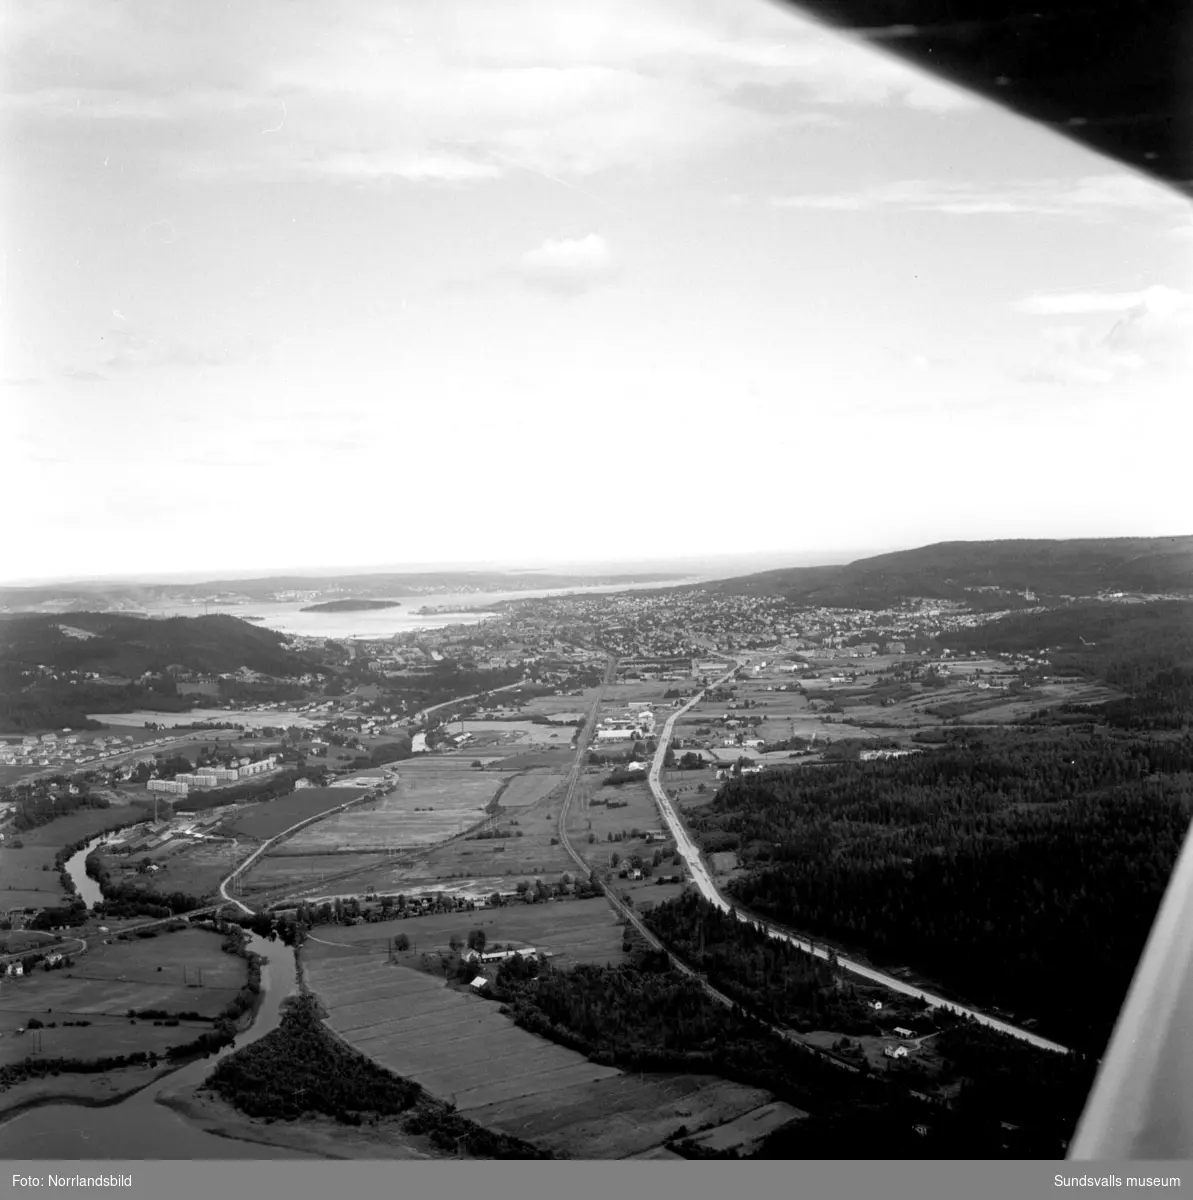 Flygfoton tagna från Selånger österut över Granlo, Nacksta och Sundsvall ut mot fjärden. Längst ned syns Selånger järnvägsstation till vänster och fritidshusområdet i Davidstad till höger.